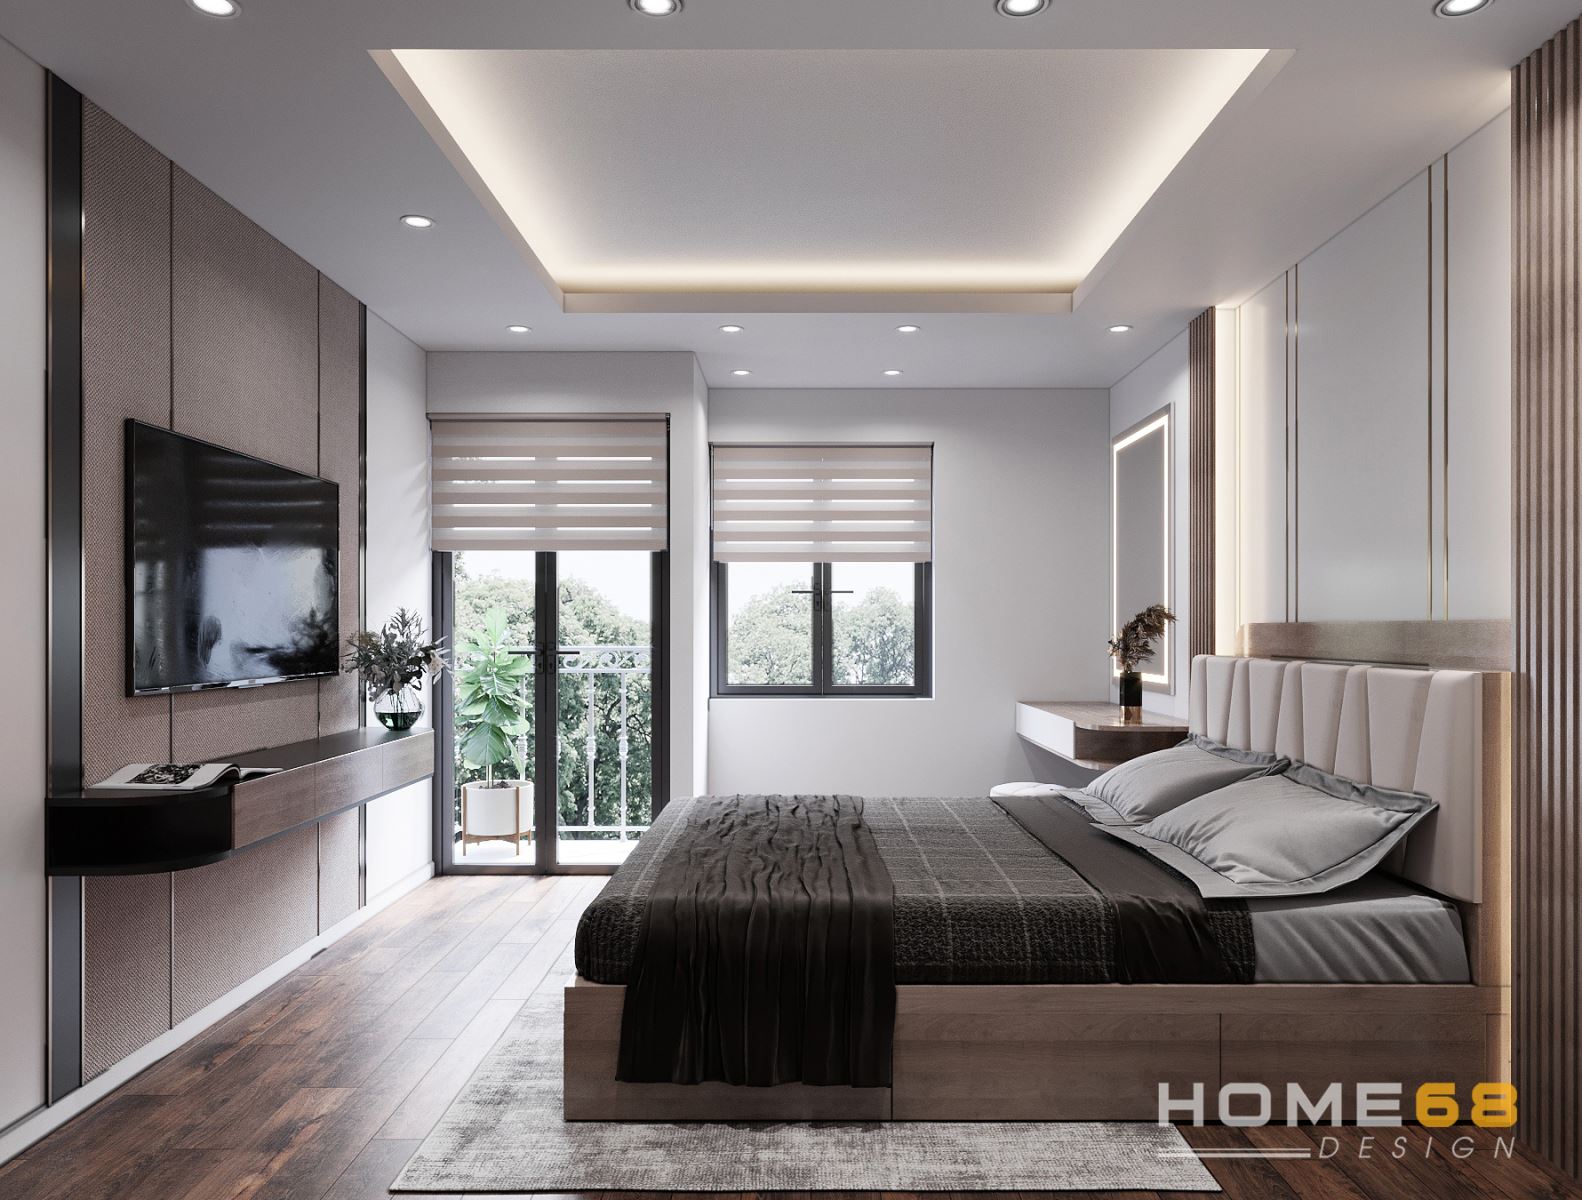 Với thiết kế nội thất phòng ngủ hiện đại Hải Phòng, không gian ngủ của bạn sẽ được tối ưu hóa về tính tiện nghi và thẩm mỹ. Sự kết hợp hài hòa giữa các màu sắc và chất liệu khác nhau sẽ mang đến cho bạn một phòng ngủ tối giản nhưng vẫn rất hiện đại và sang trọng.